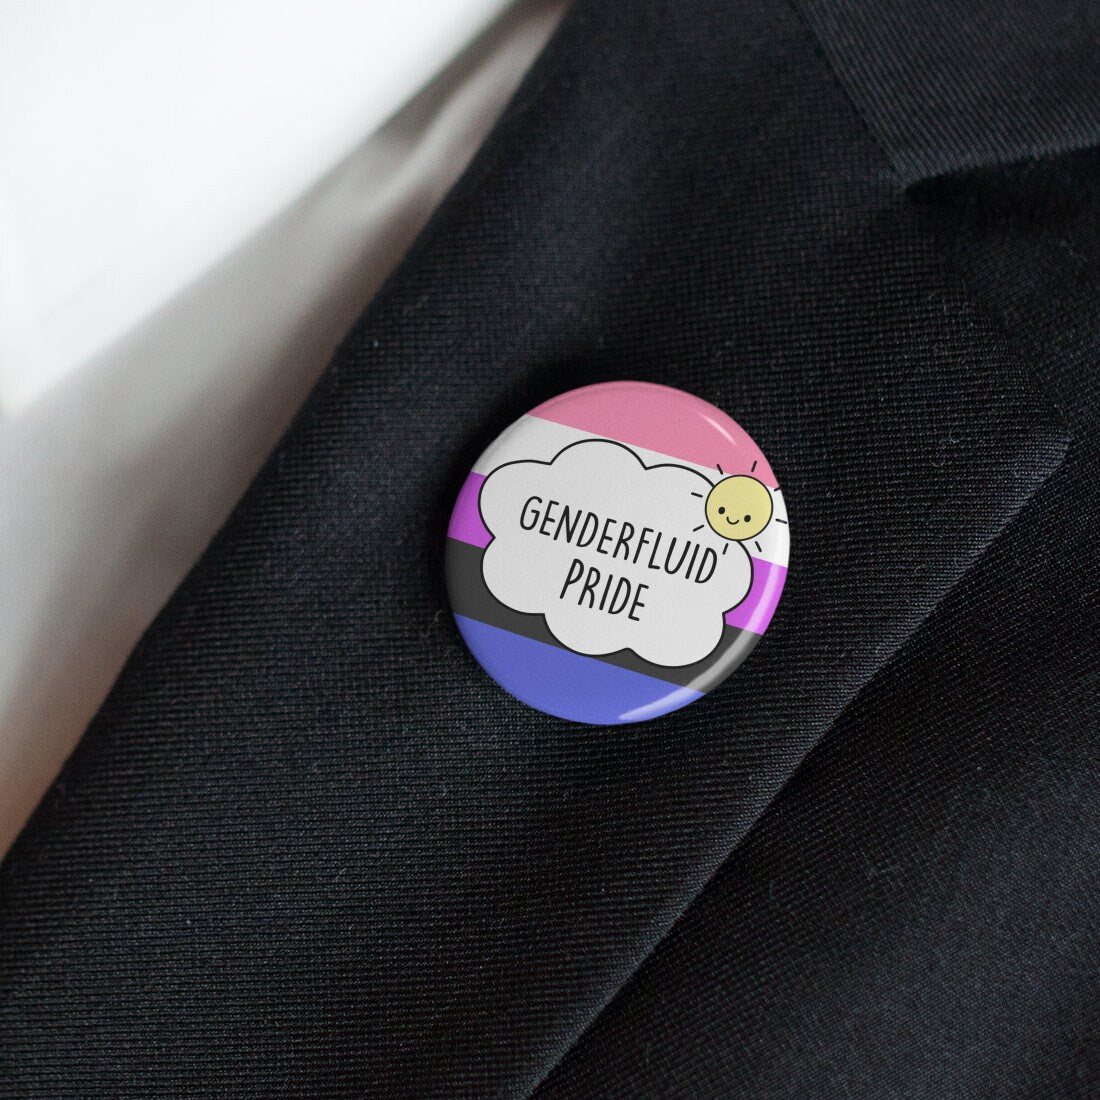 Genderfluid Pride Badge / Gender Fluid Flag Rainbow